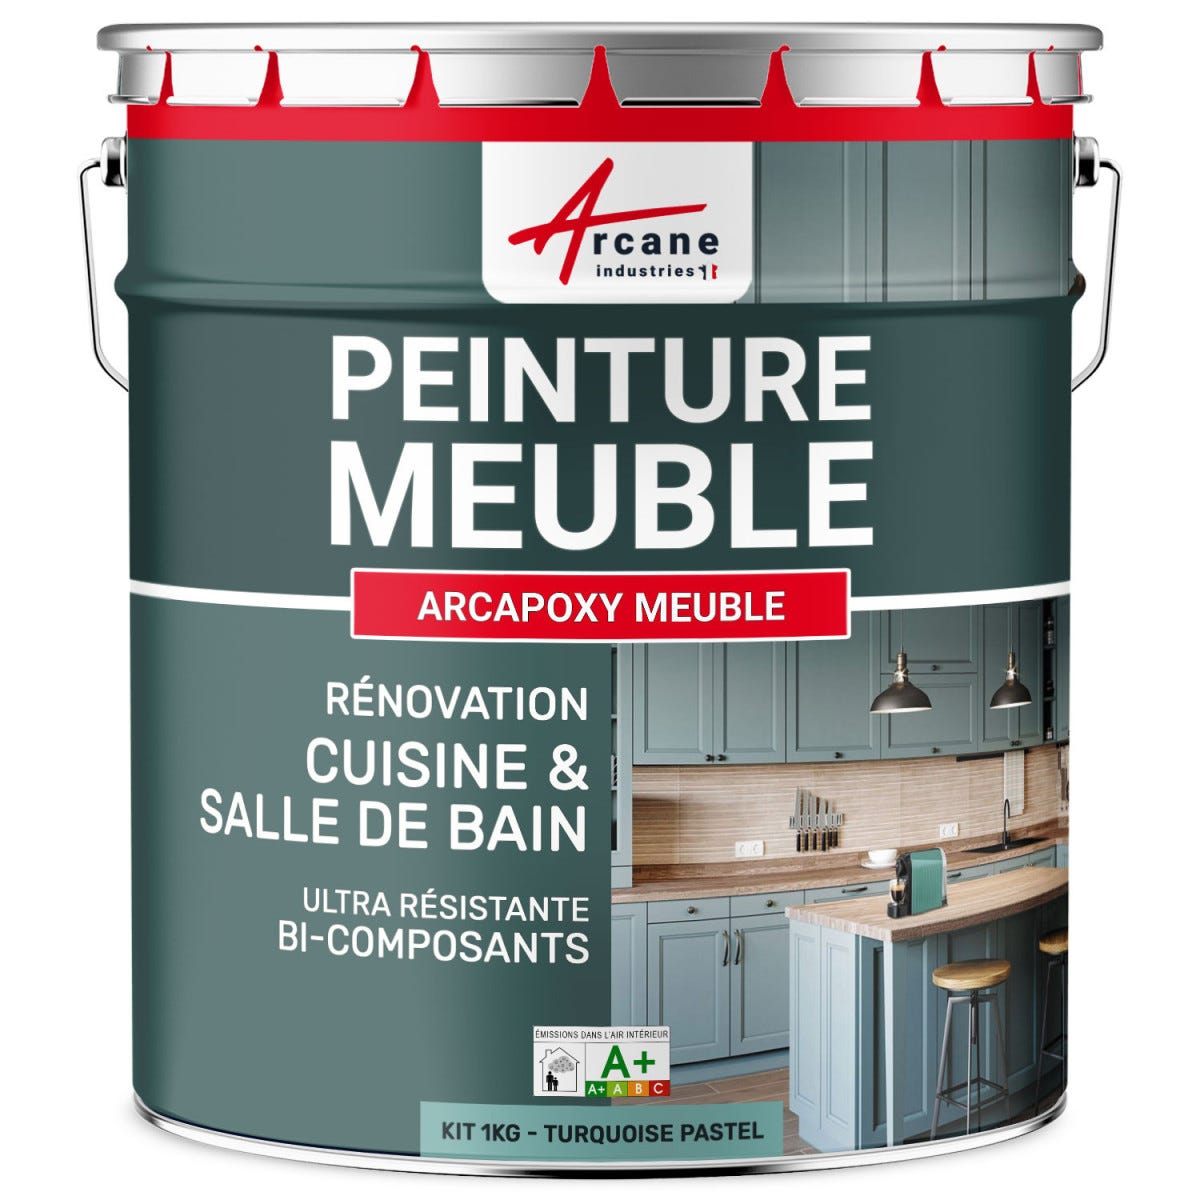 Peinture Meuble Cuisine, Salle de Bain - ARCAPOXY MEUBLE - 1 kg (jusqu'à 12 m² en 2 couches) - Turquoise Pastel - RAL 6034 - ARCANE INDUSTRIES 0